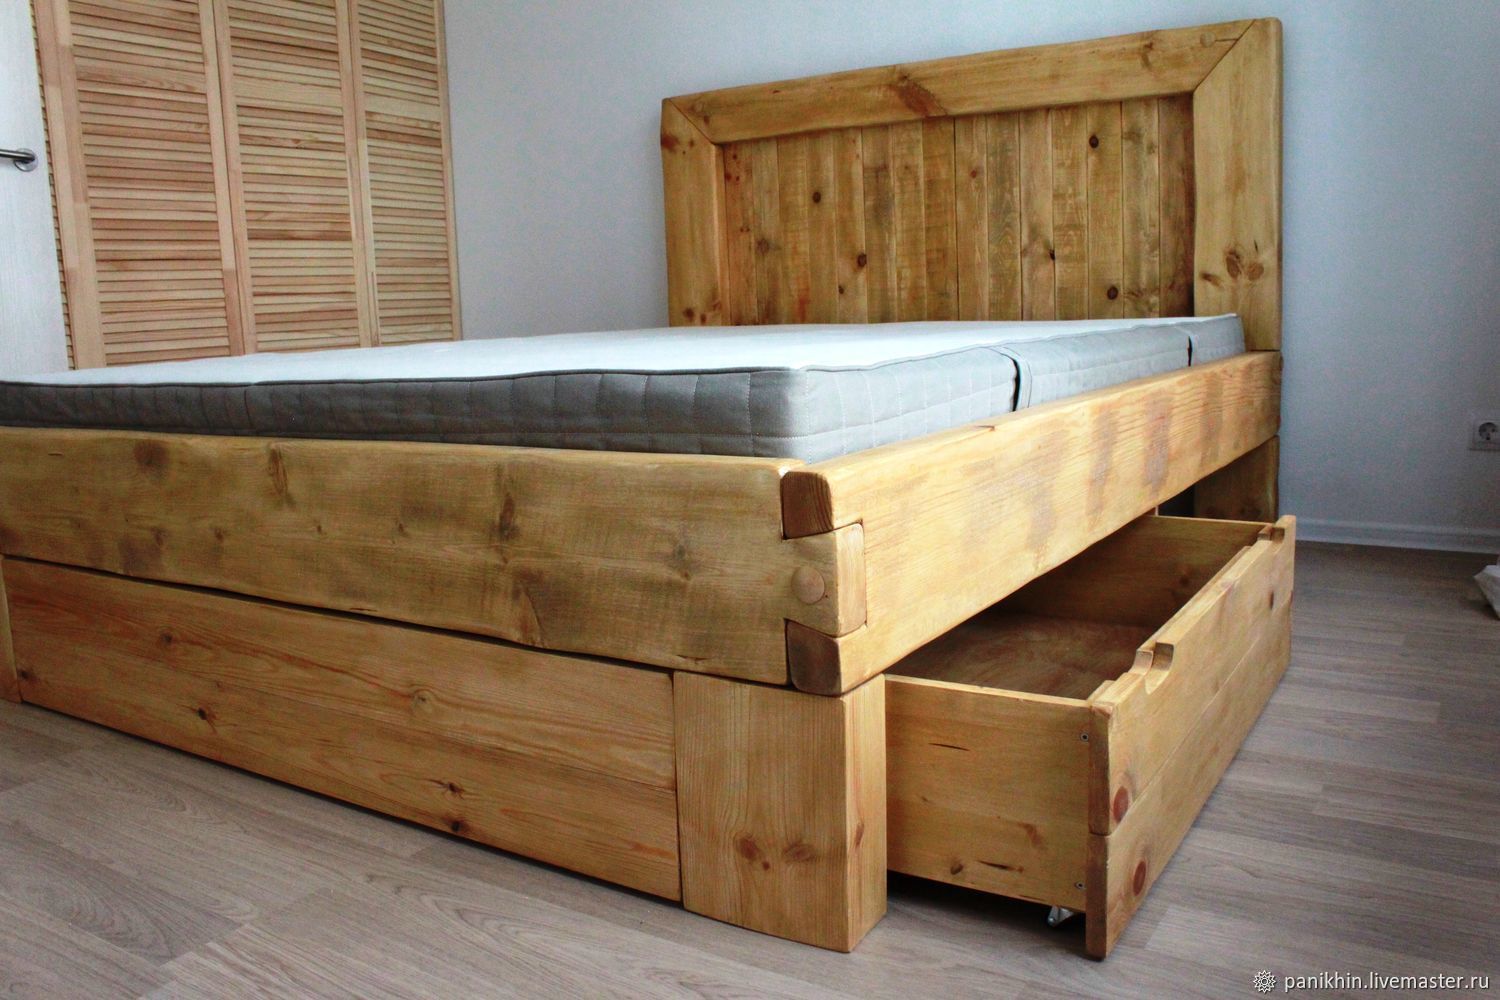 Польза от деревянной двуспальной кровати